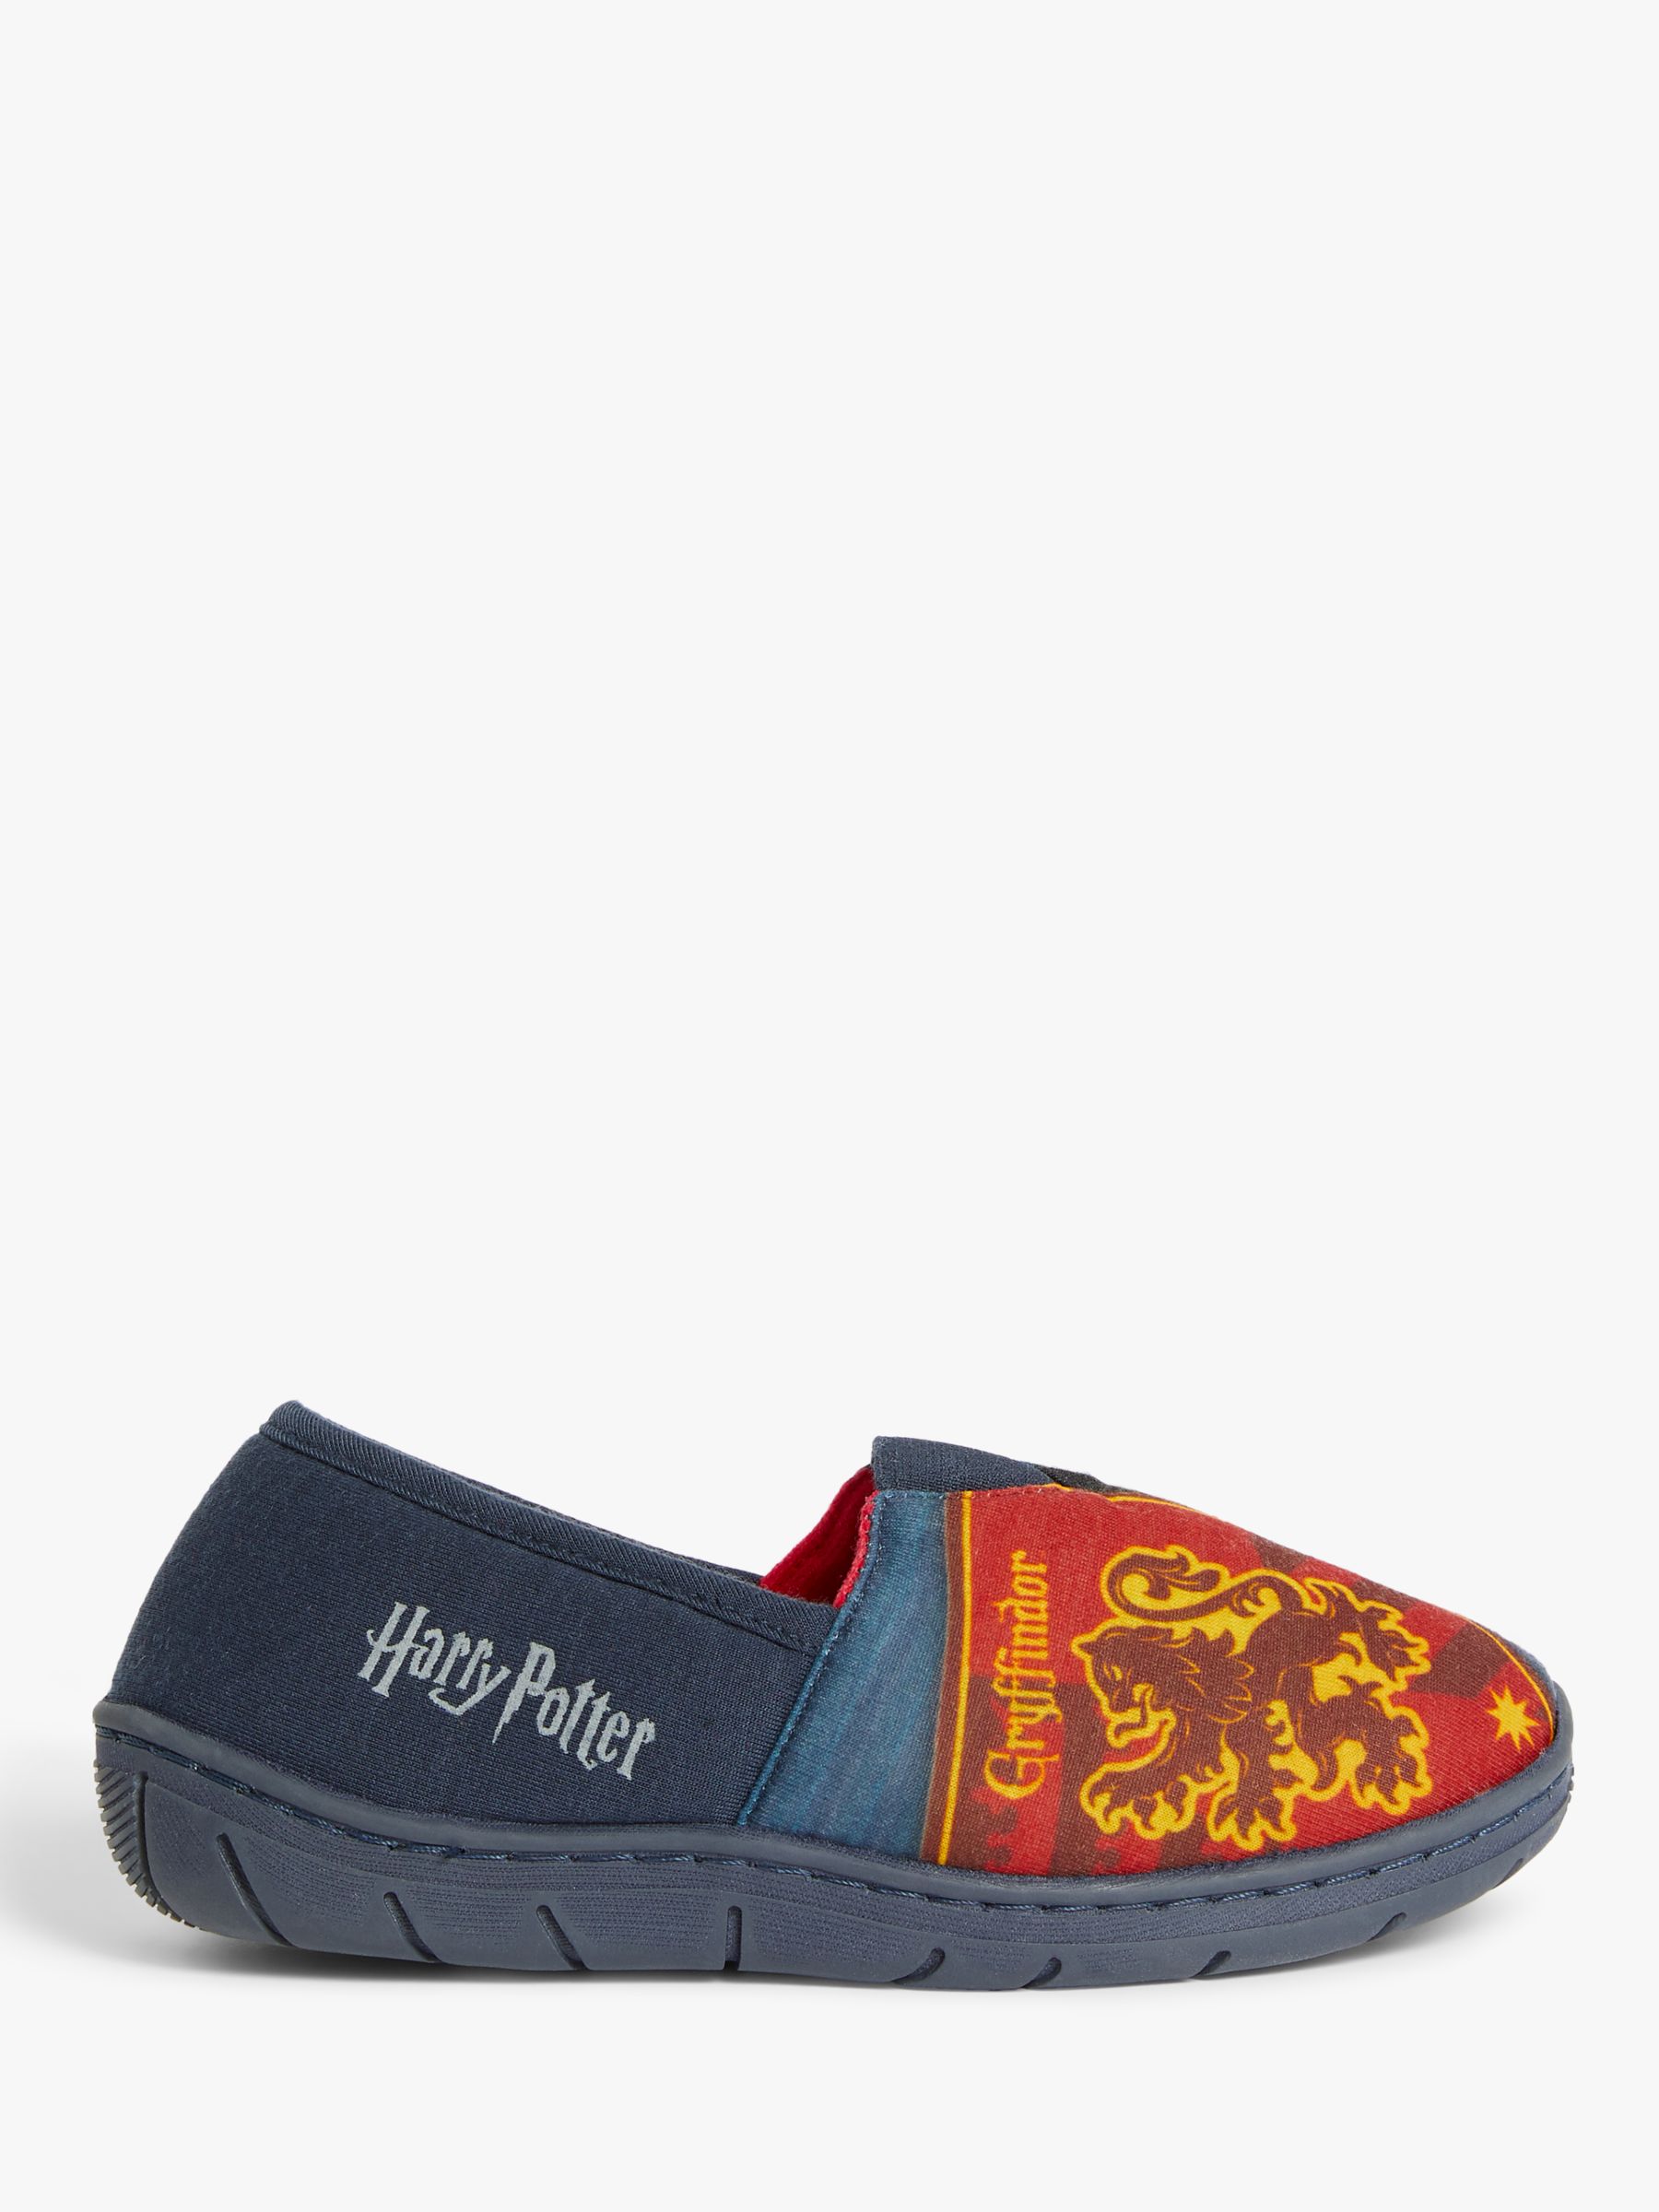 Harry Potter Children's House Crest Slippers, Blue